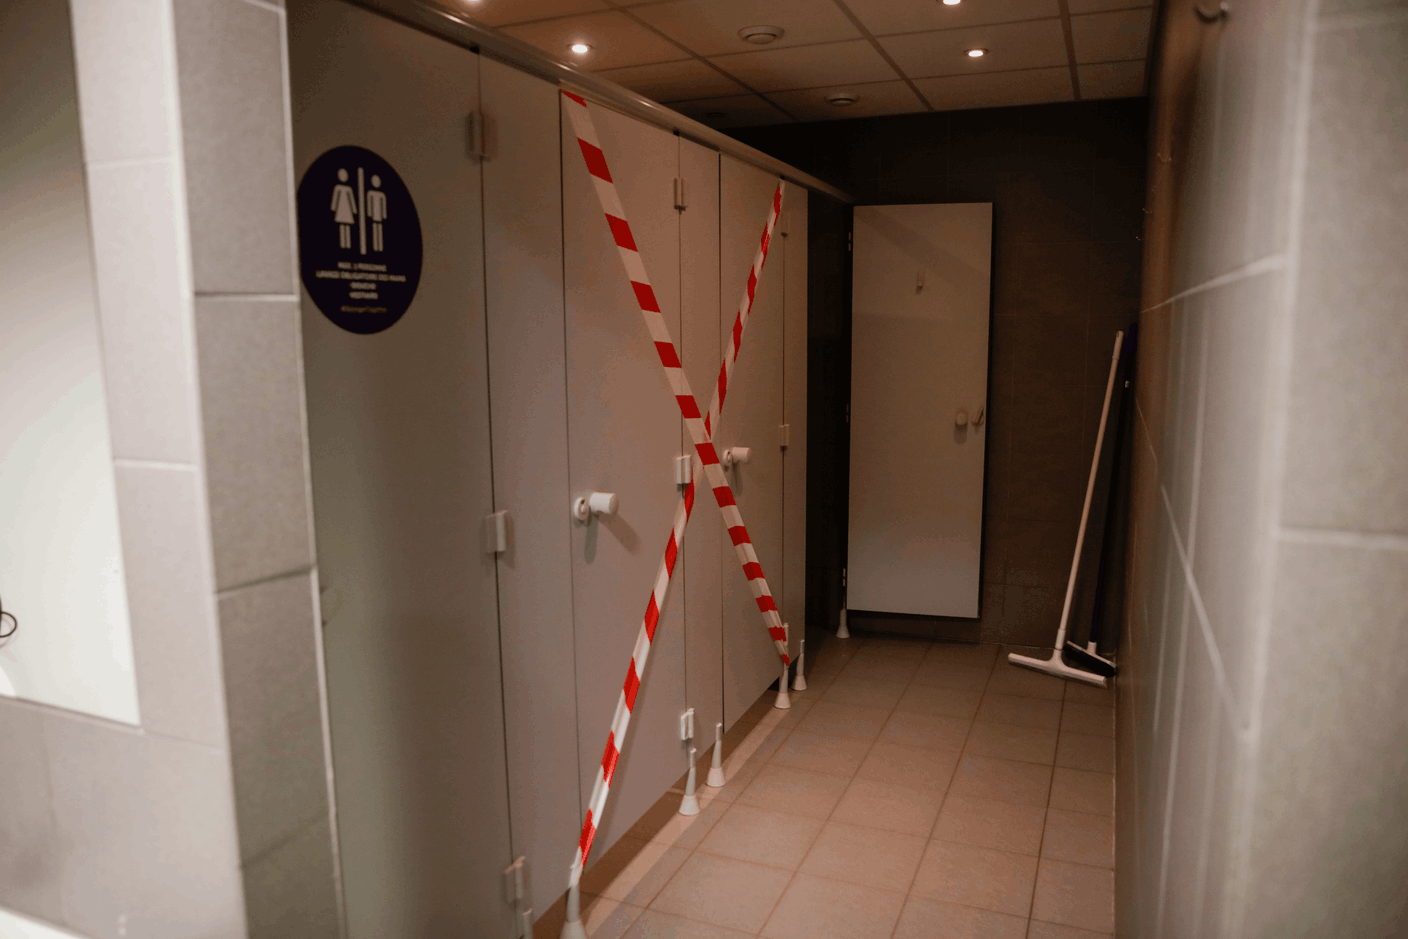 Les douches, vestiaires et sanitaires restent accessibles, en respectant quelques règles. (Photo: Romain Gamba/Maison Moderne)